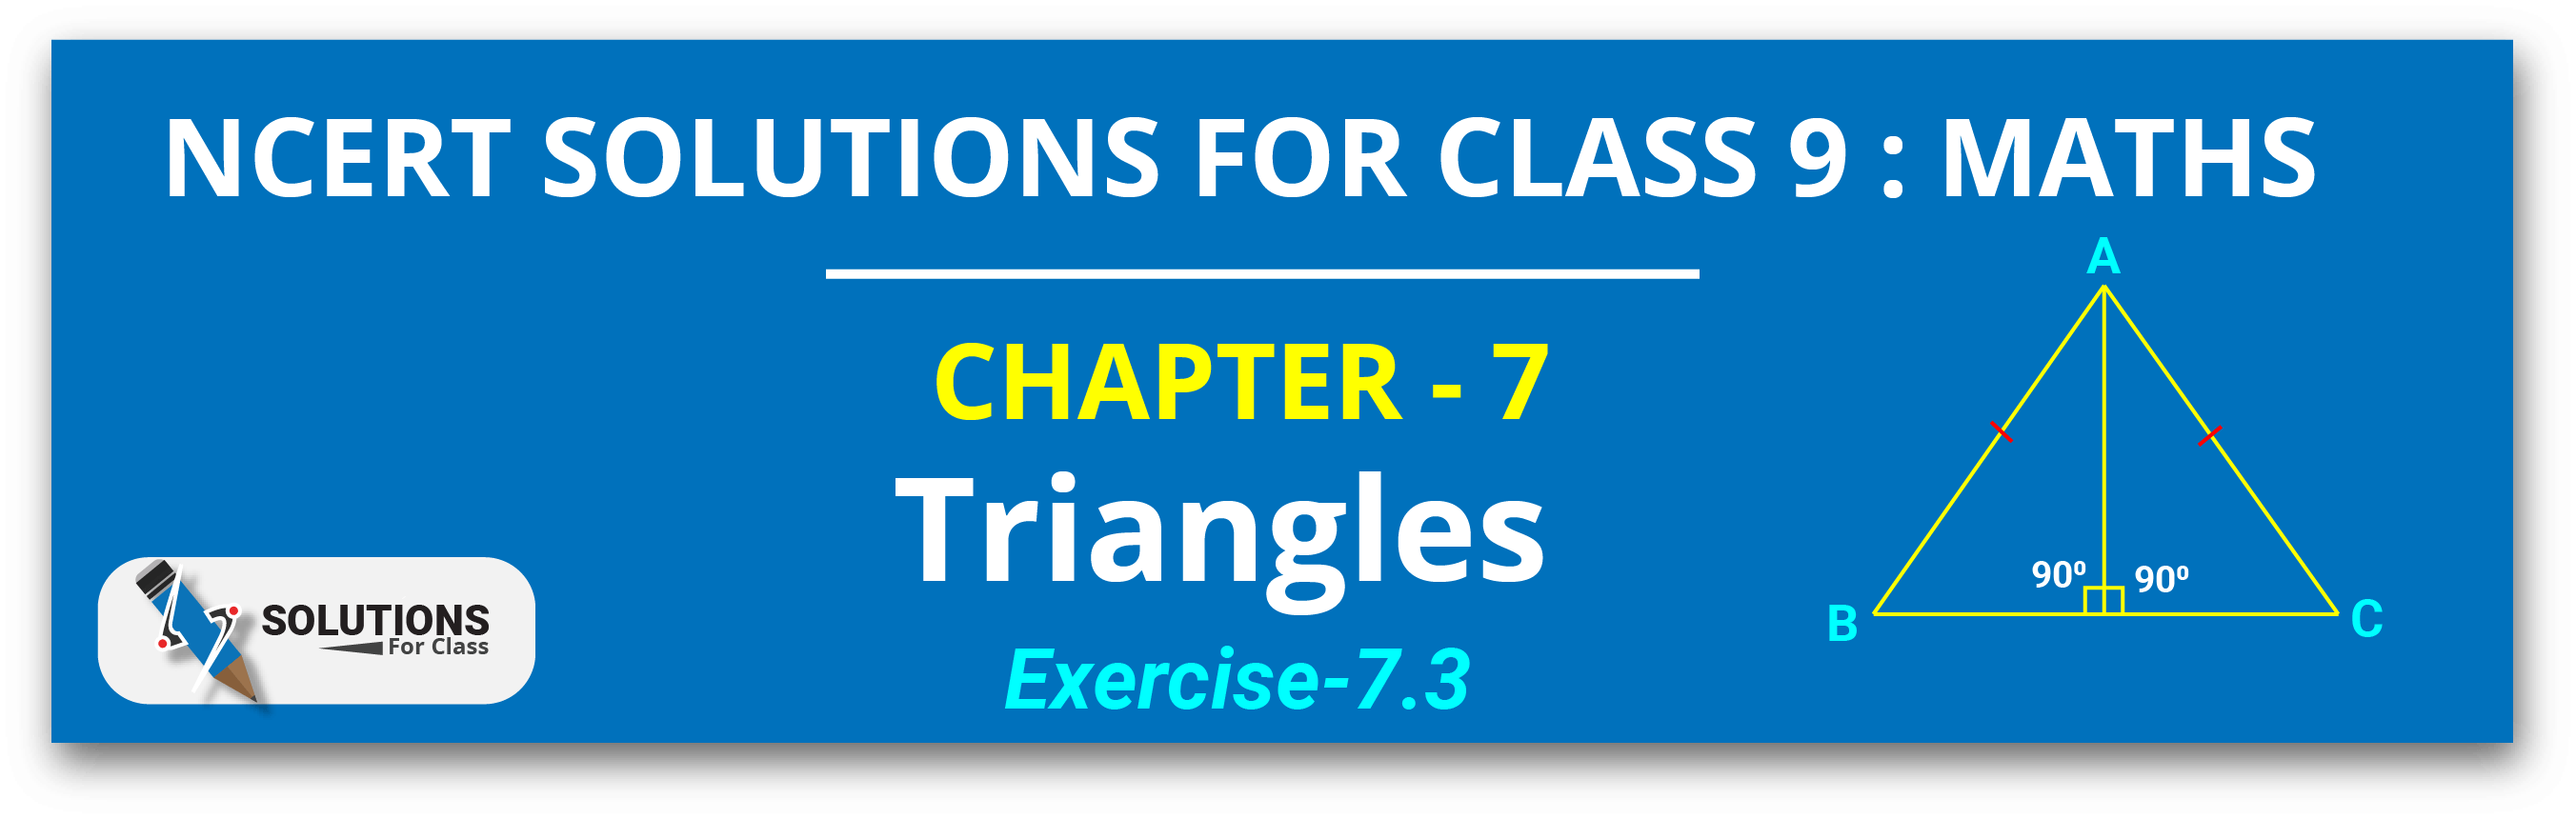 NCERT Solutions For Class 9, Maths, Chapter 7, Exe 7.3